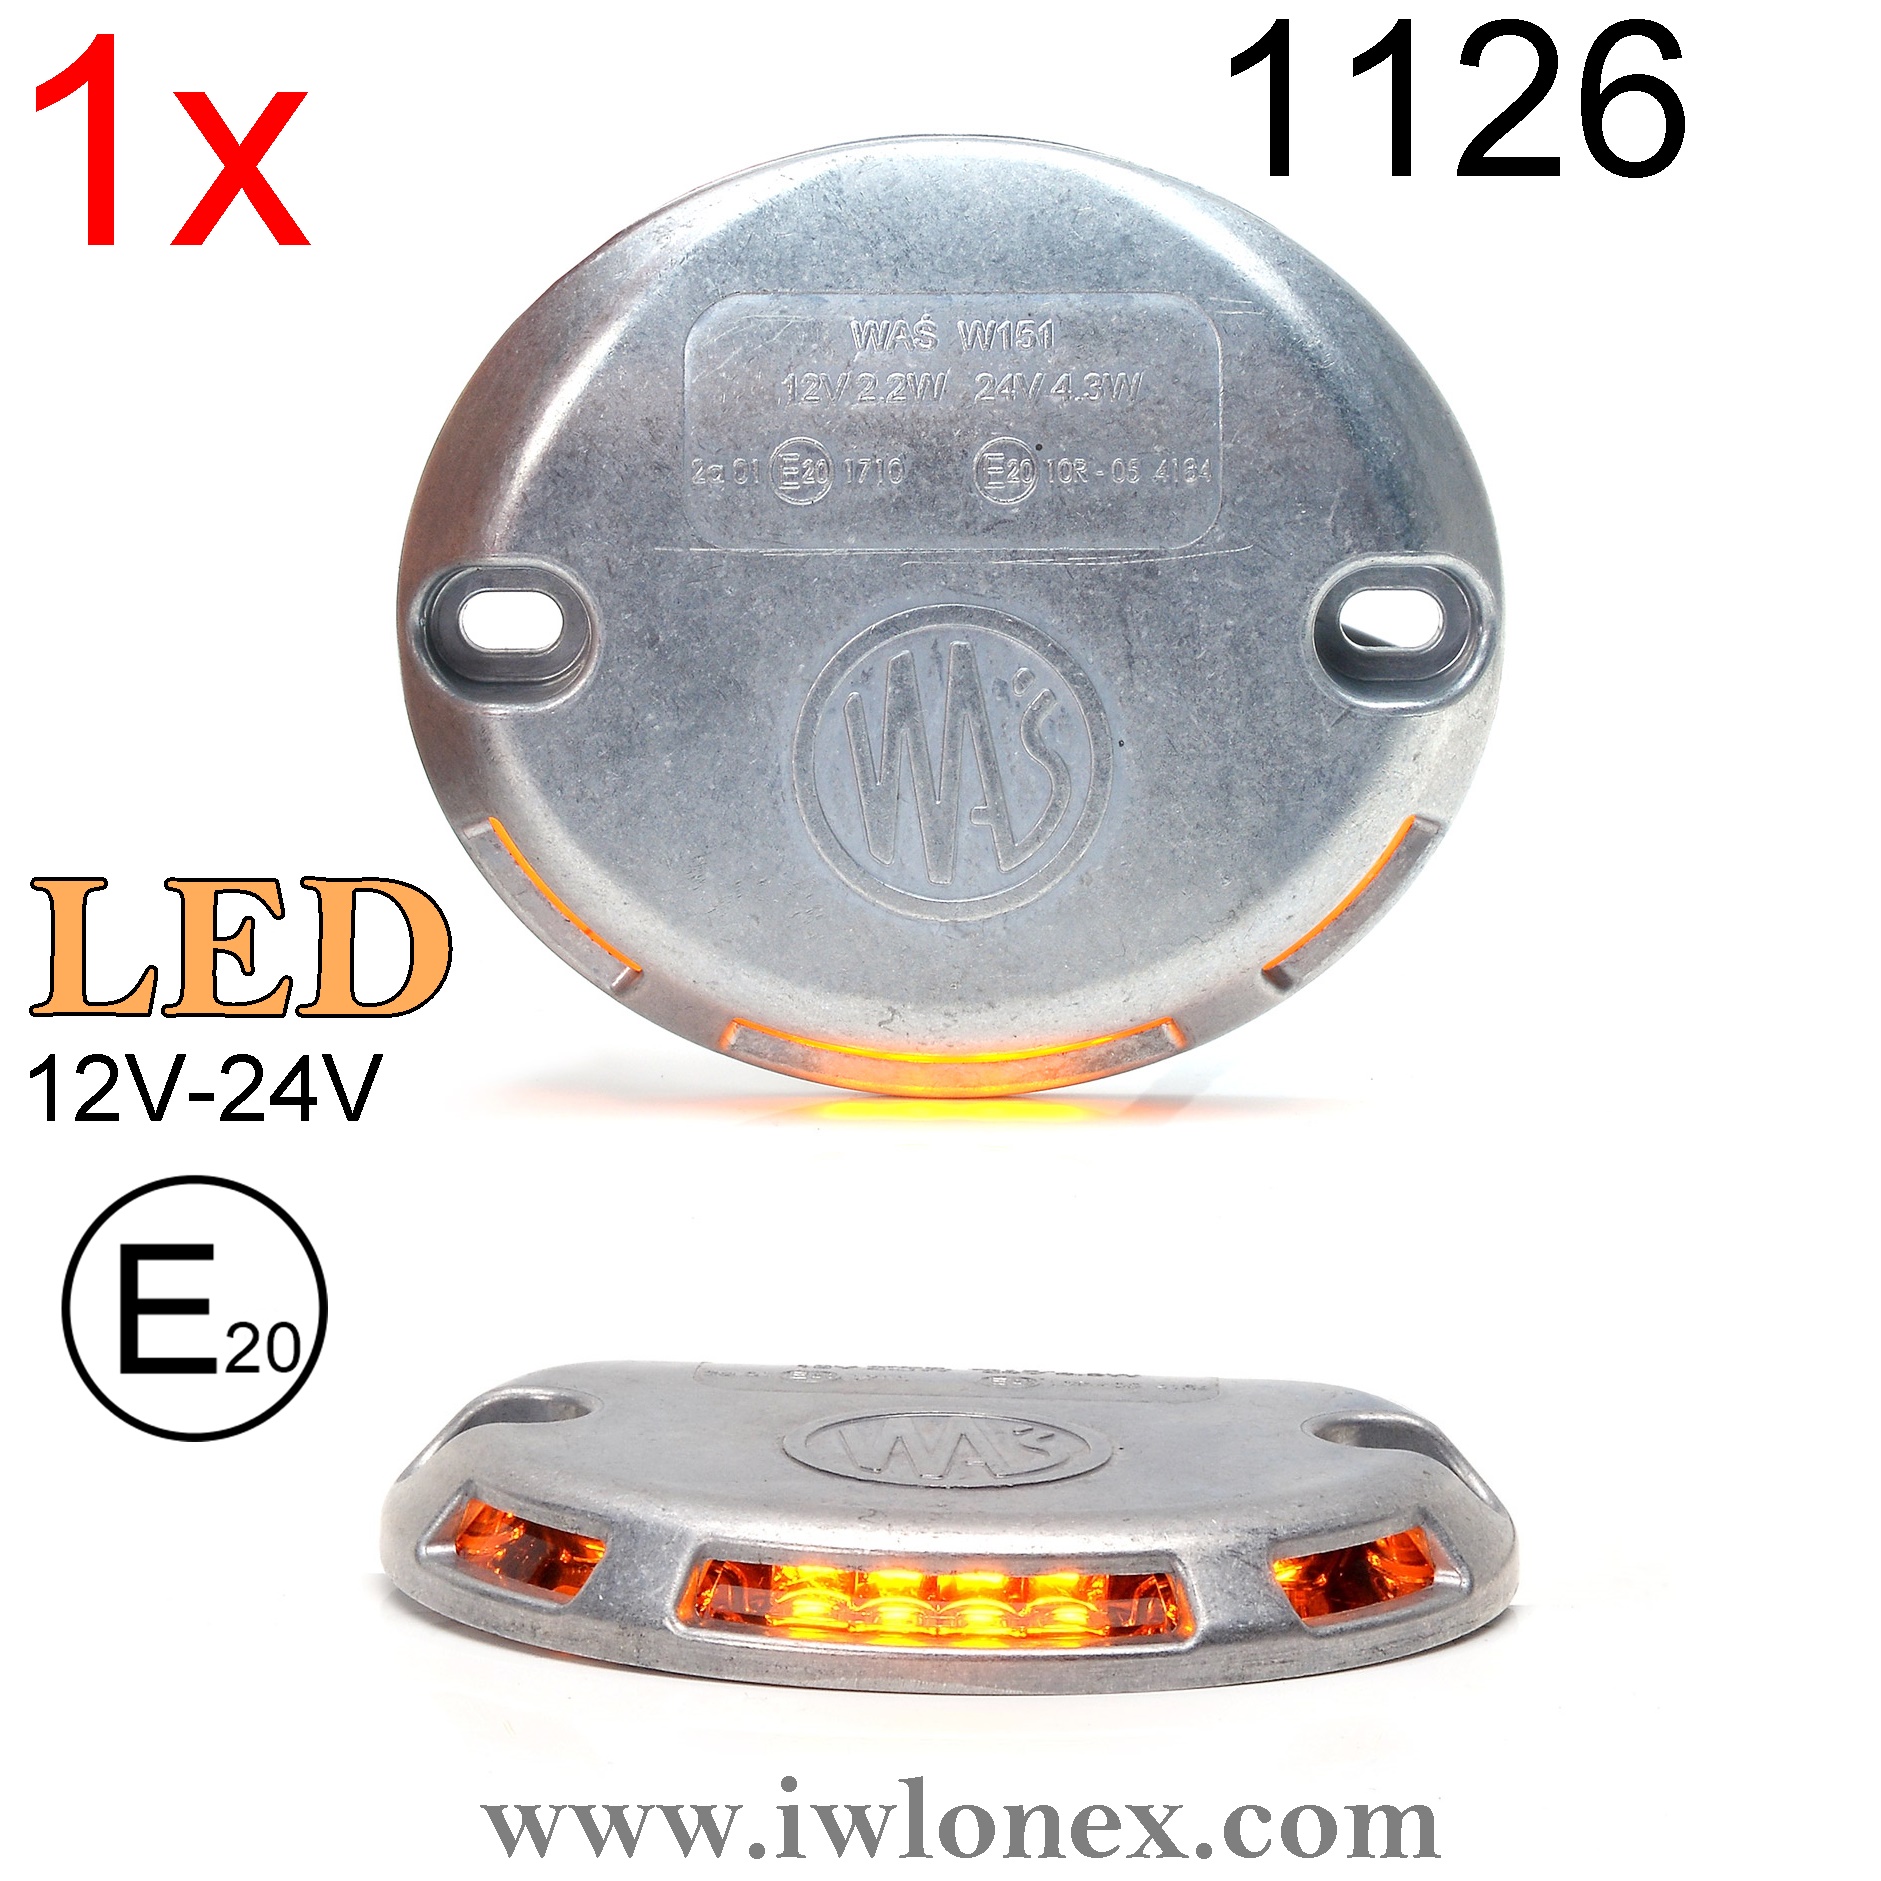 LED Warnleuchte für Hebebühnen Universal W151 12V-24V